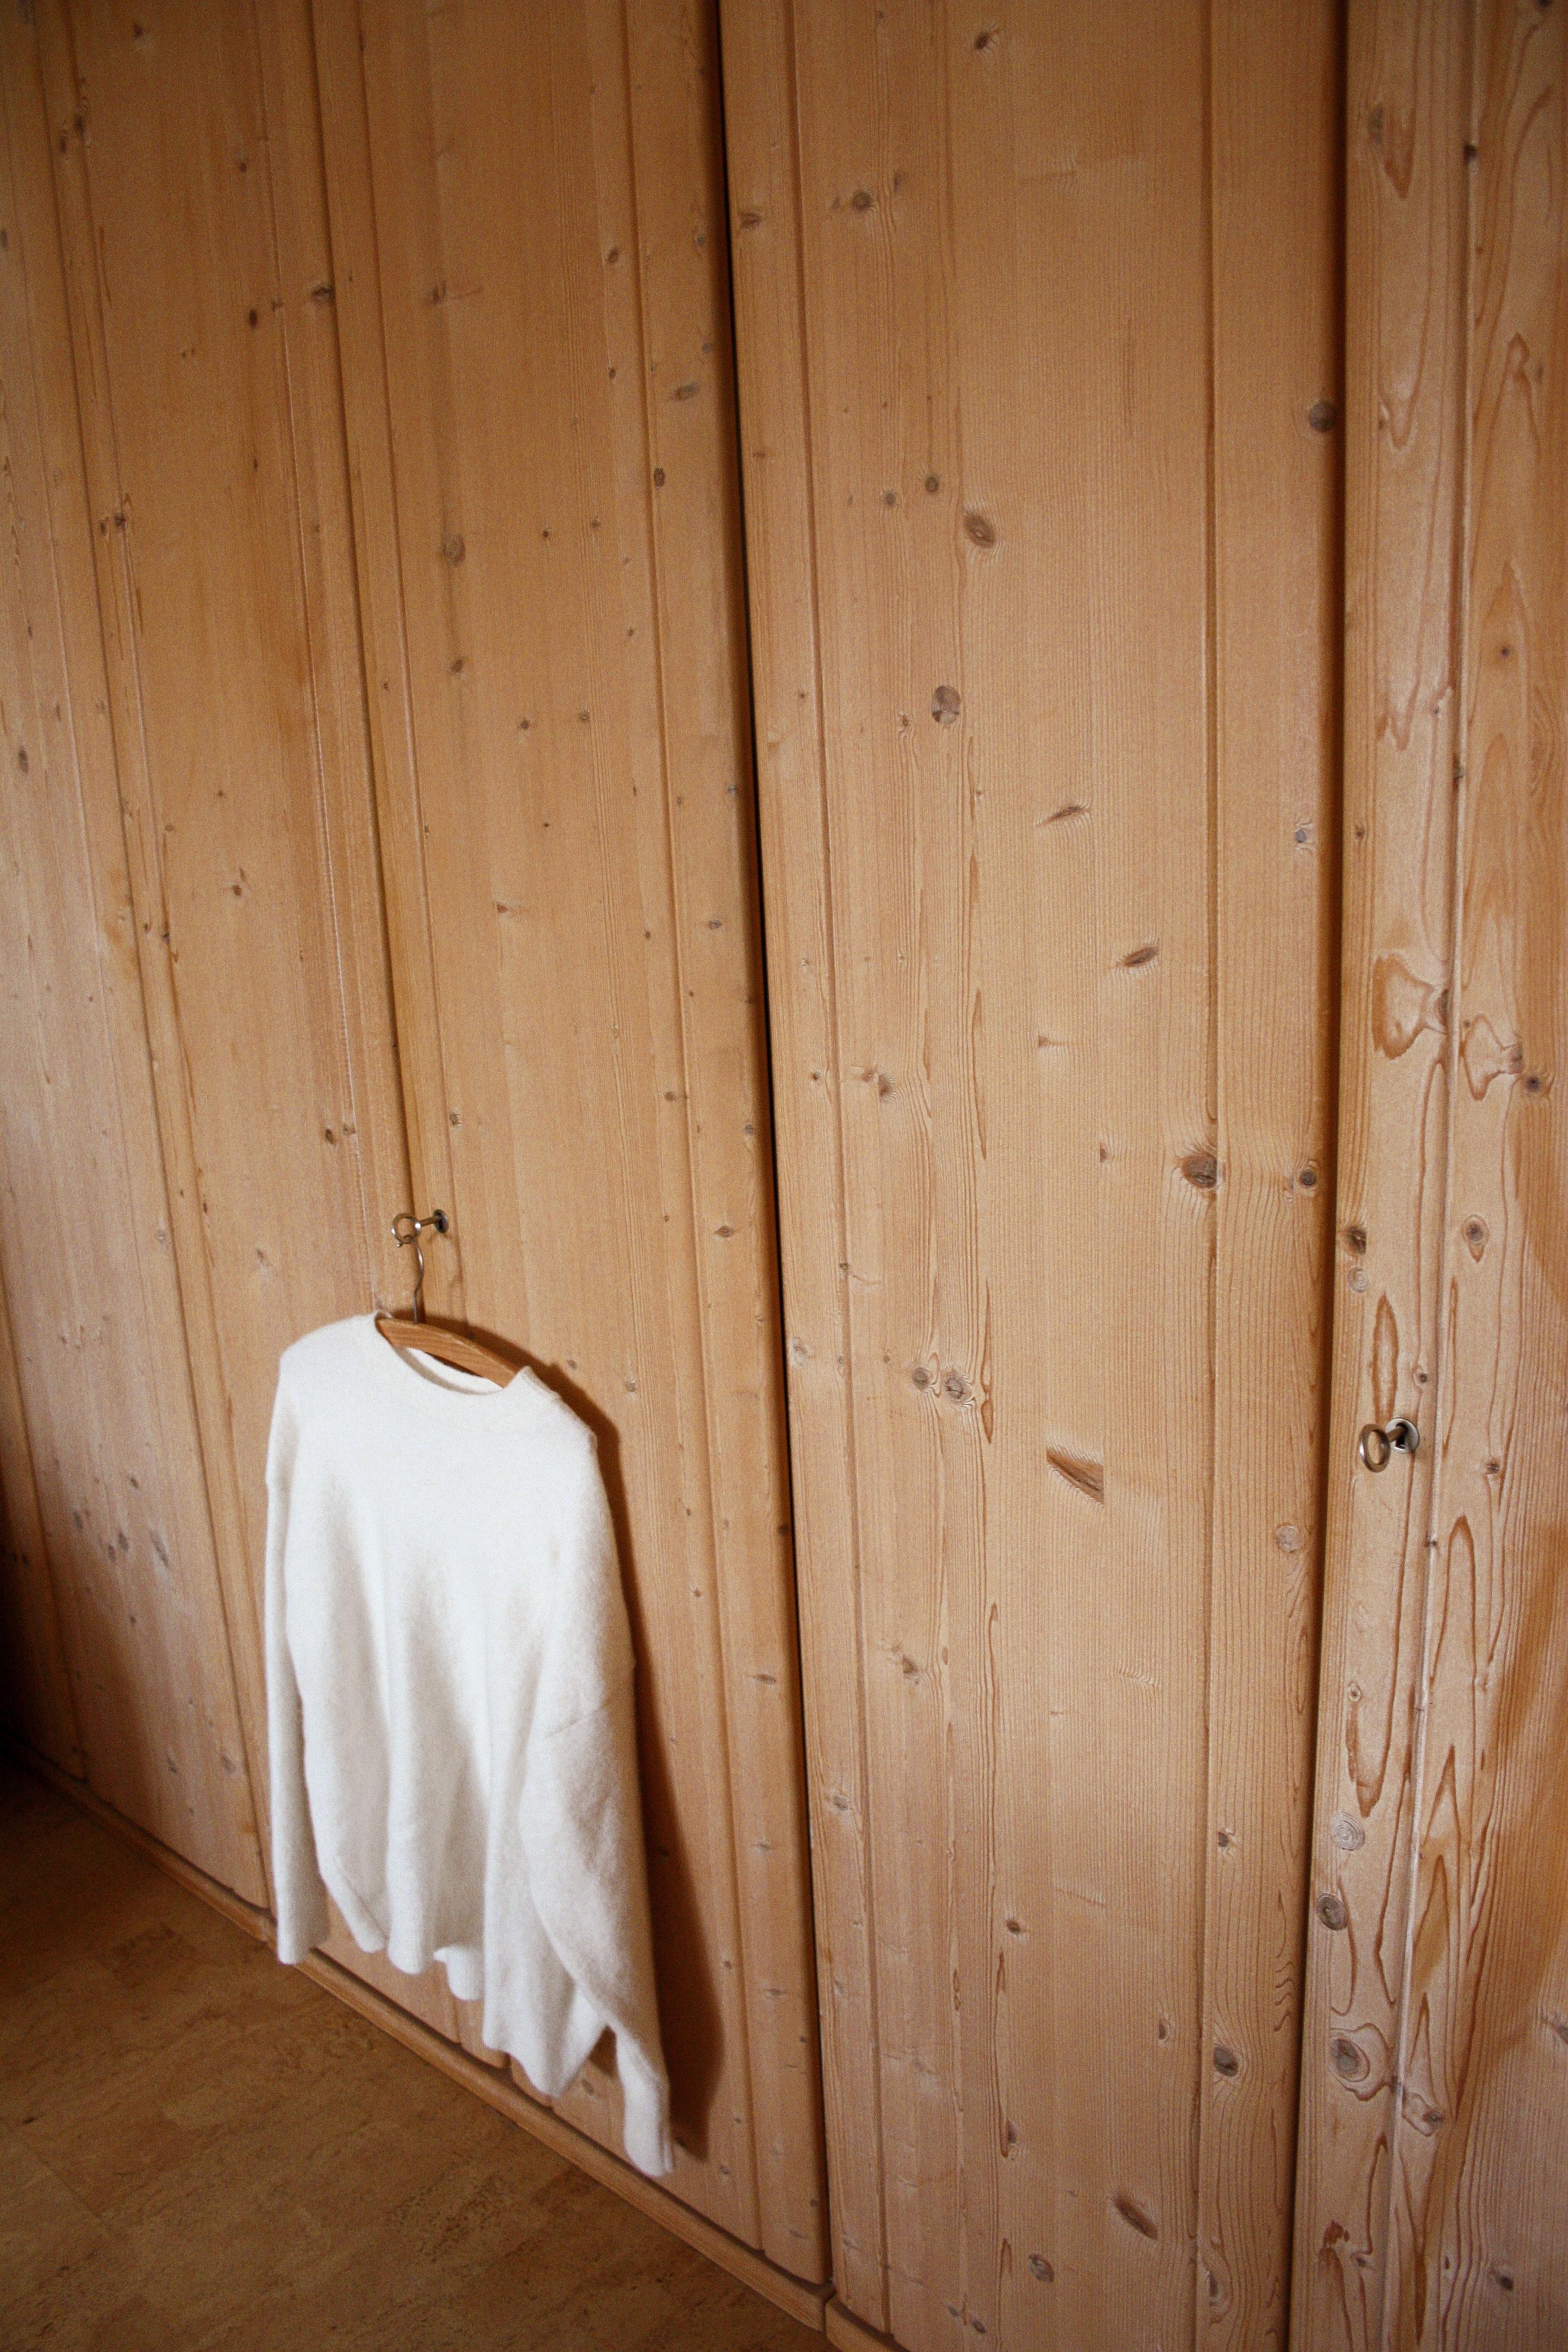 Der Schrank bietet genug #Stauraum für unsere Kleidung. 👕

#livingchallenge 